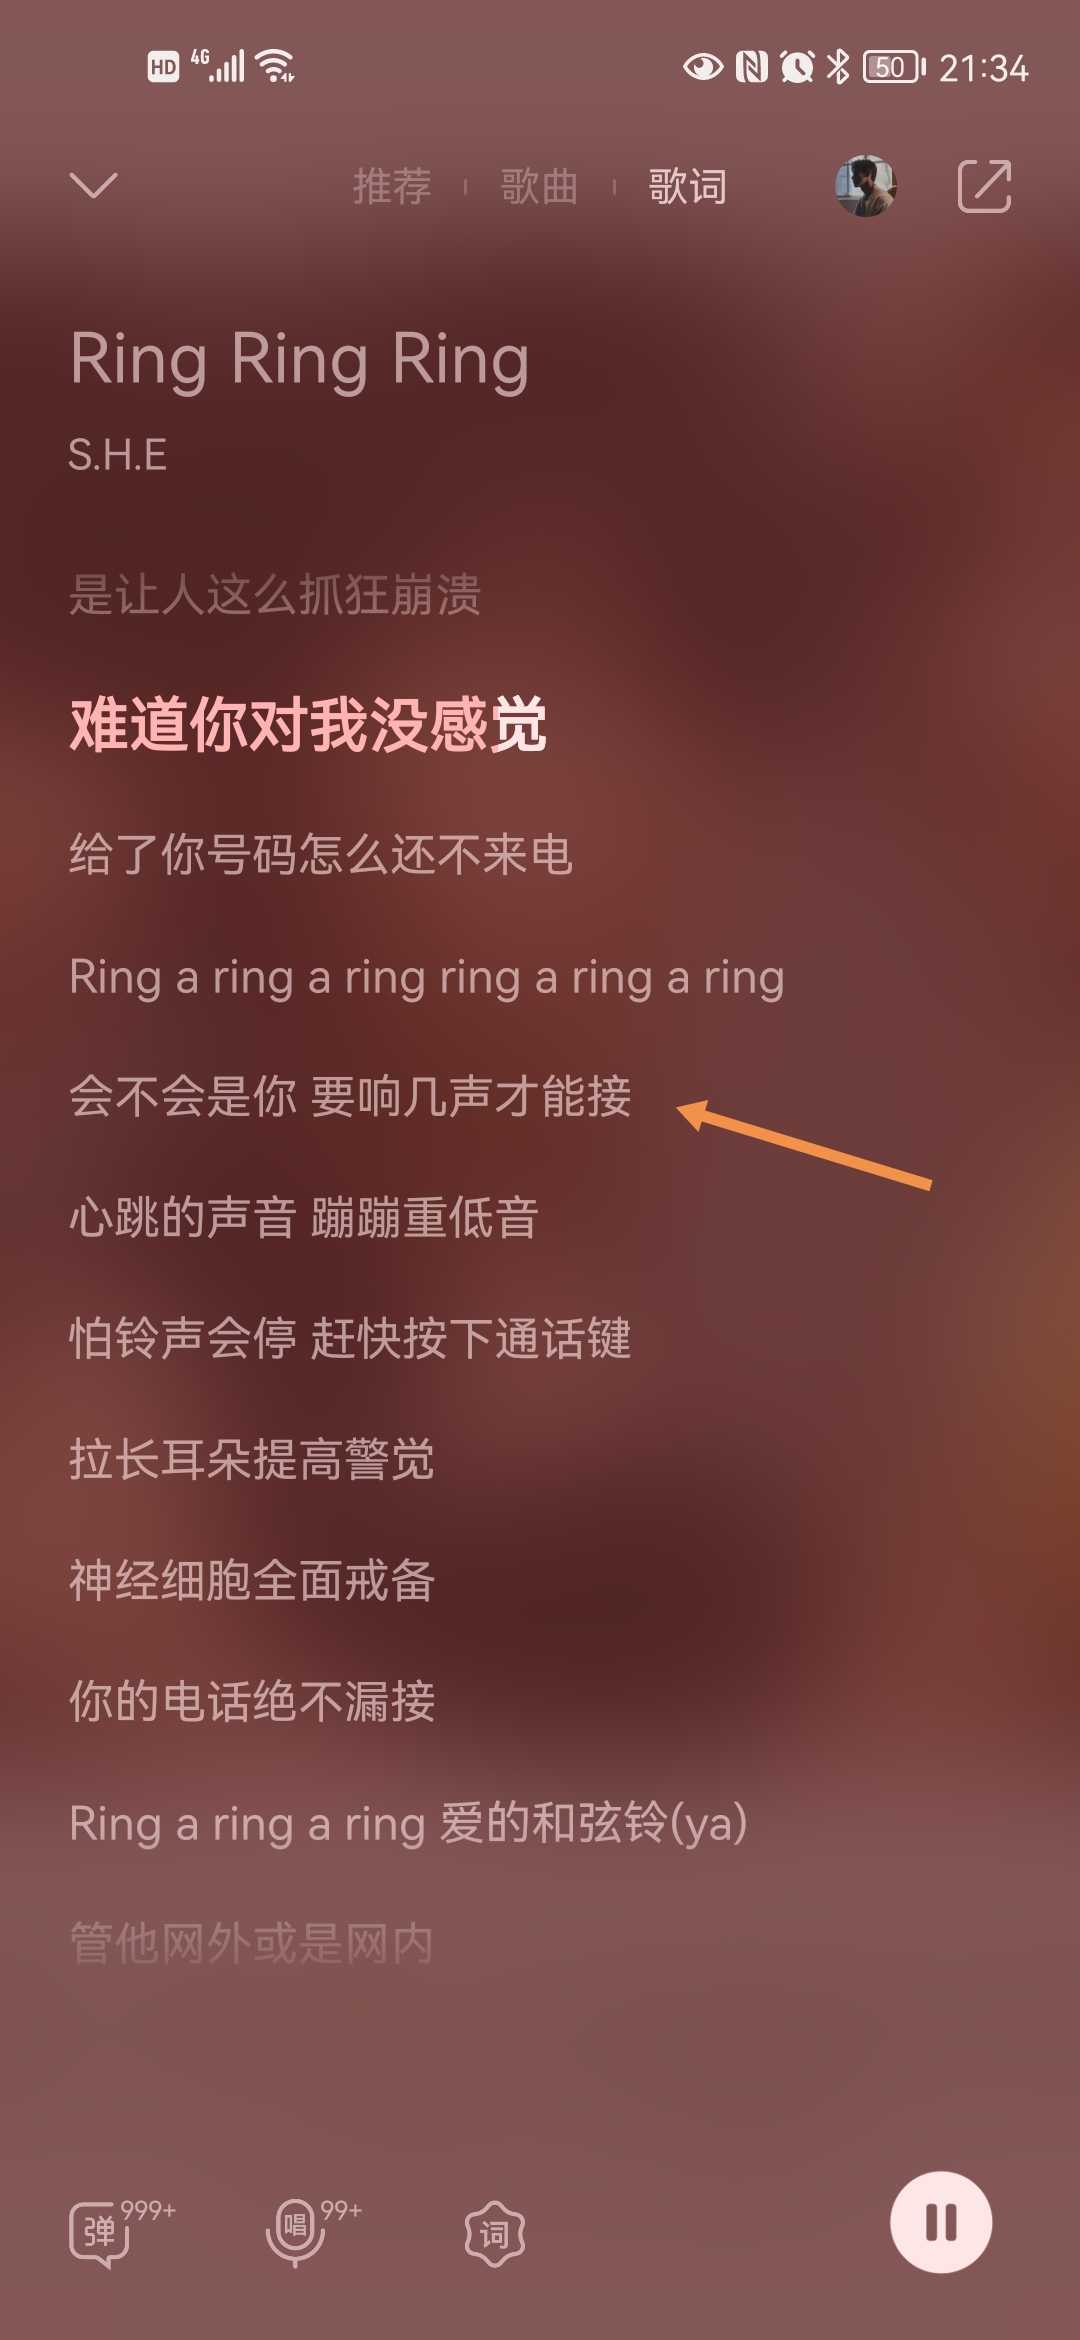 荷达 的想法: 抖音上听到的《ring ring ring》,知道